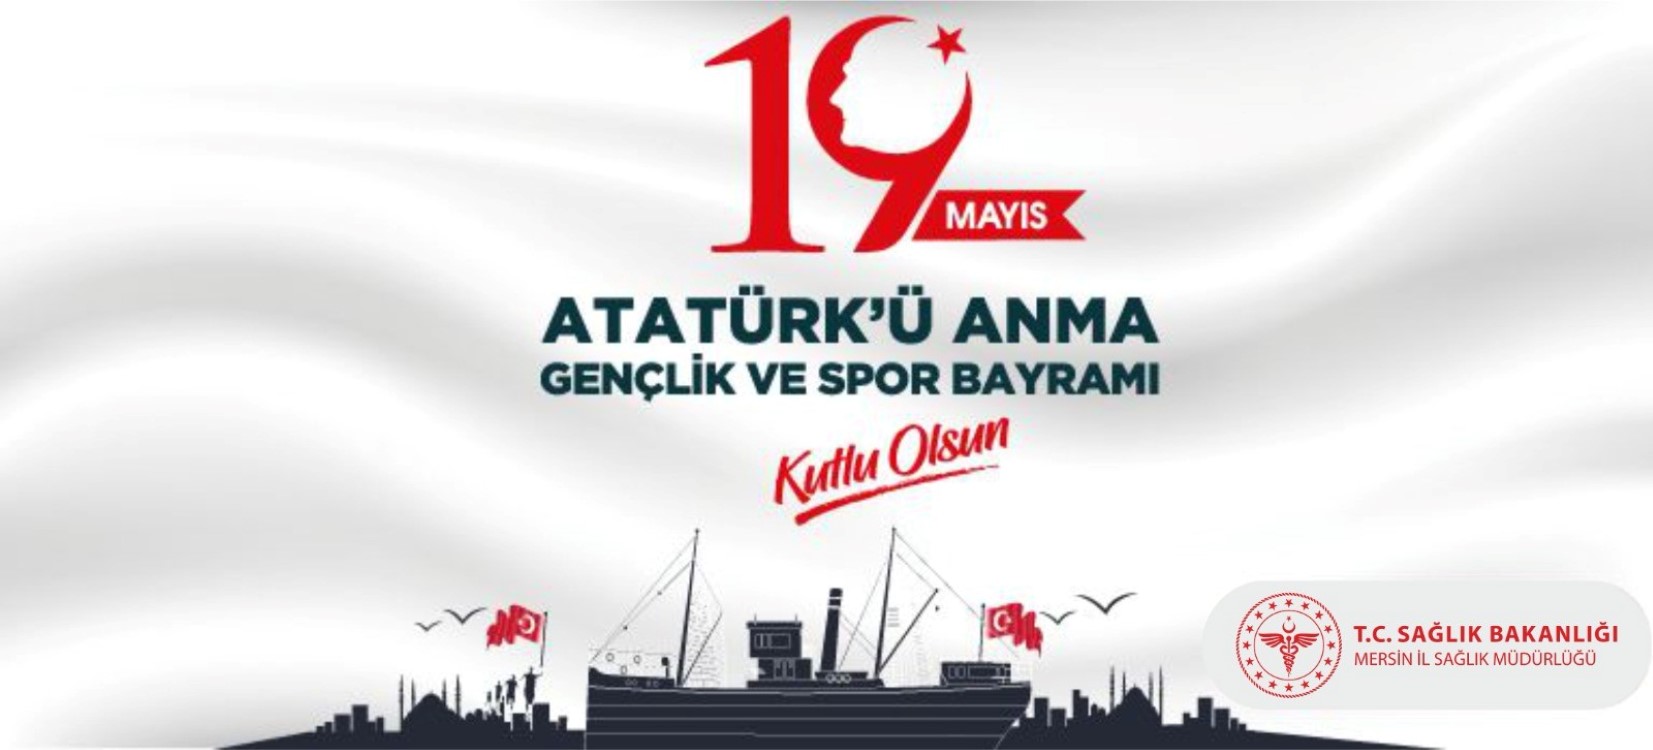 19 Mayıs Atatürk'ü Anma Gençlik ve Spor Bayramı'mız Kutlu Olsun!